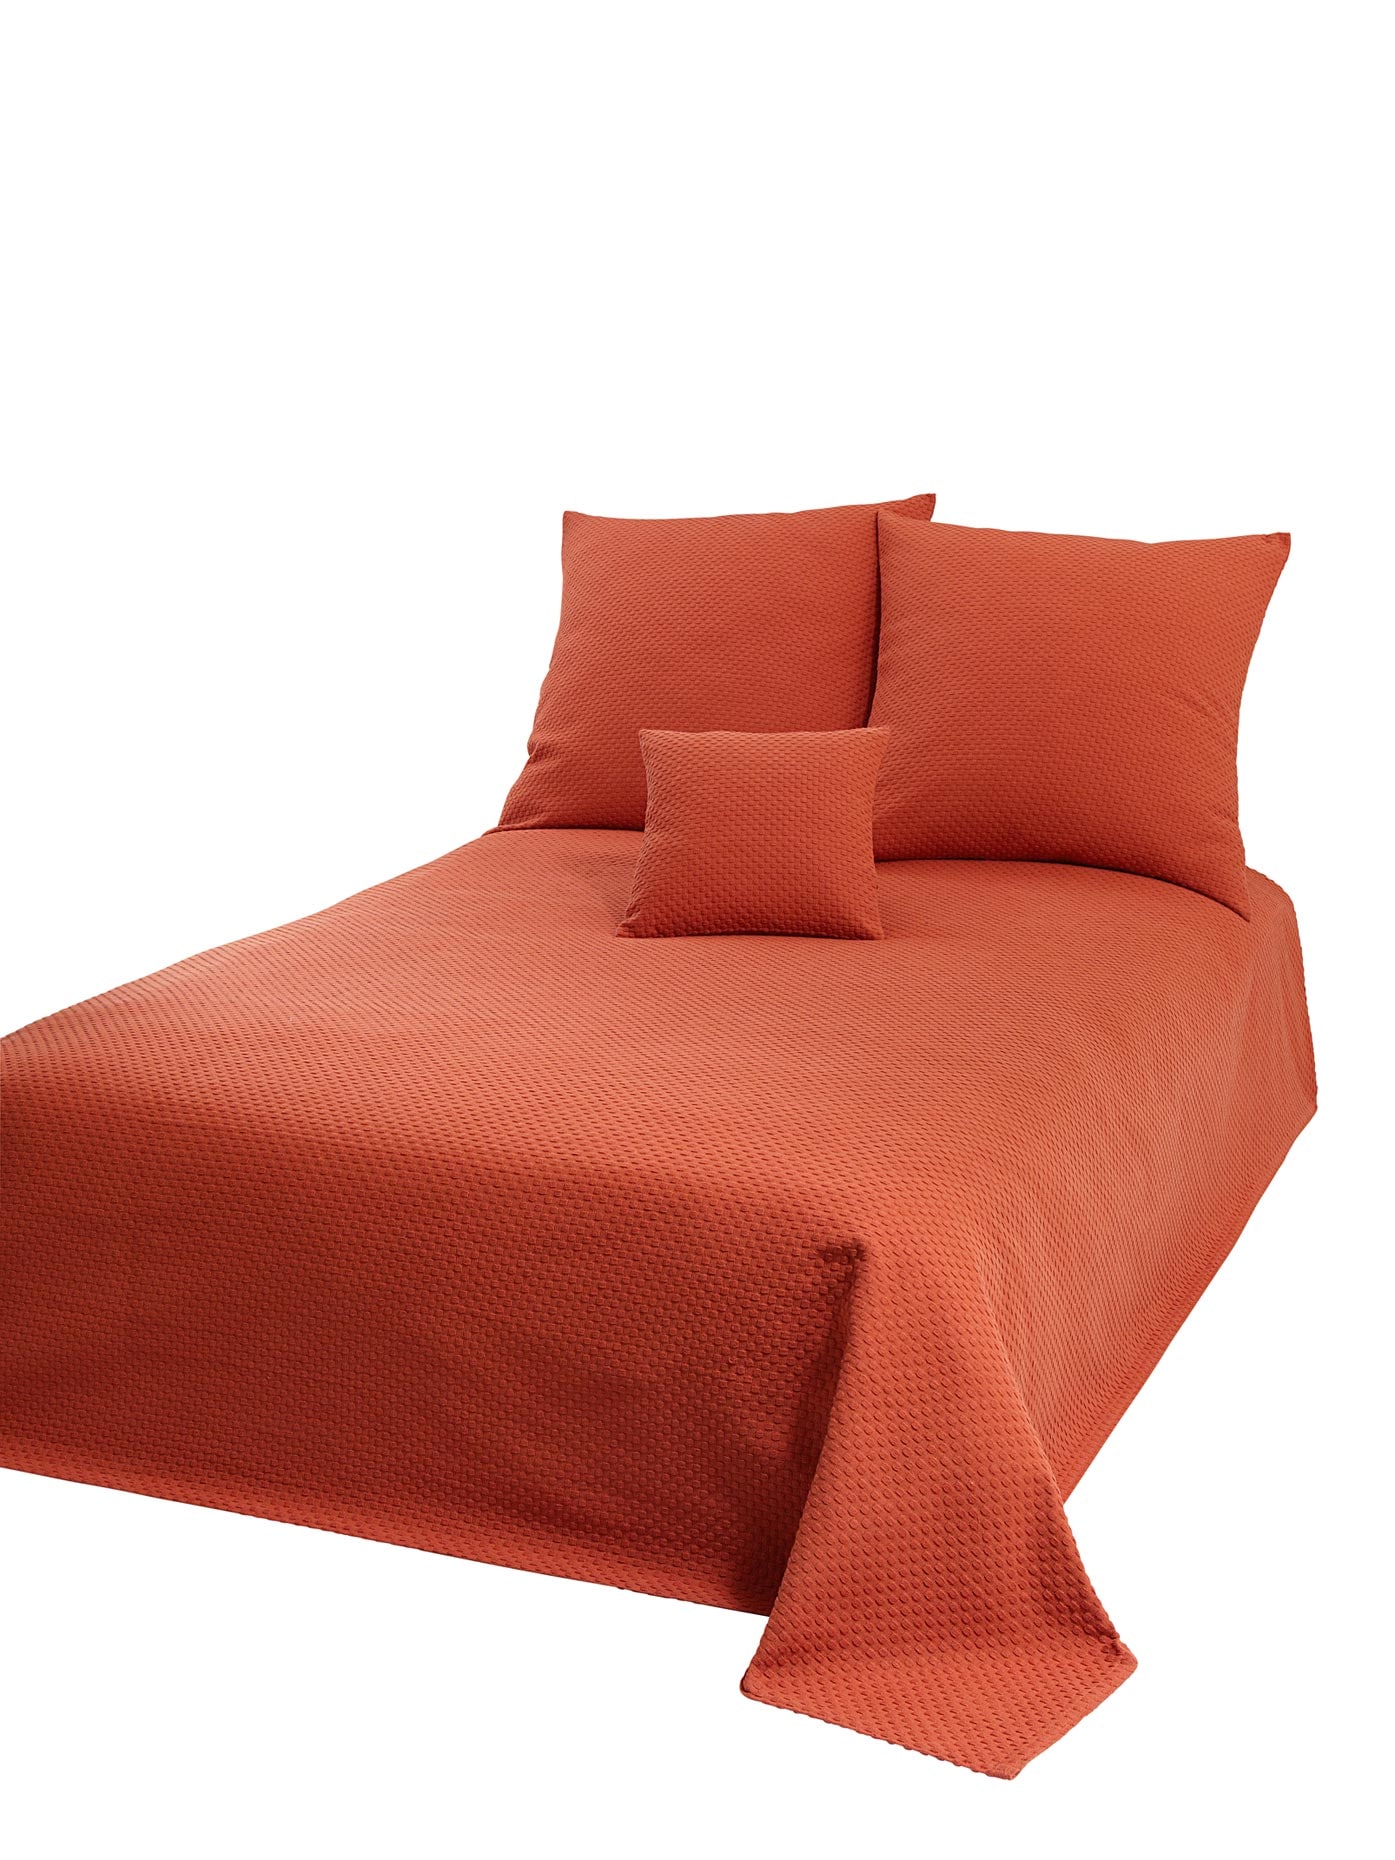 Tagesdecken & | Moebel in 24 Orange Bettüberwürfe Preisvergleich